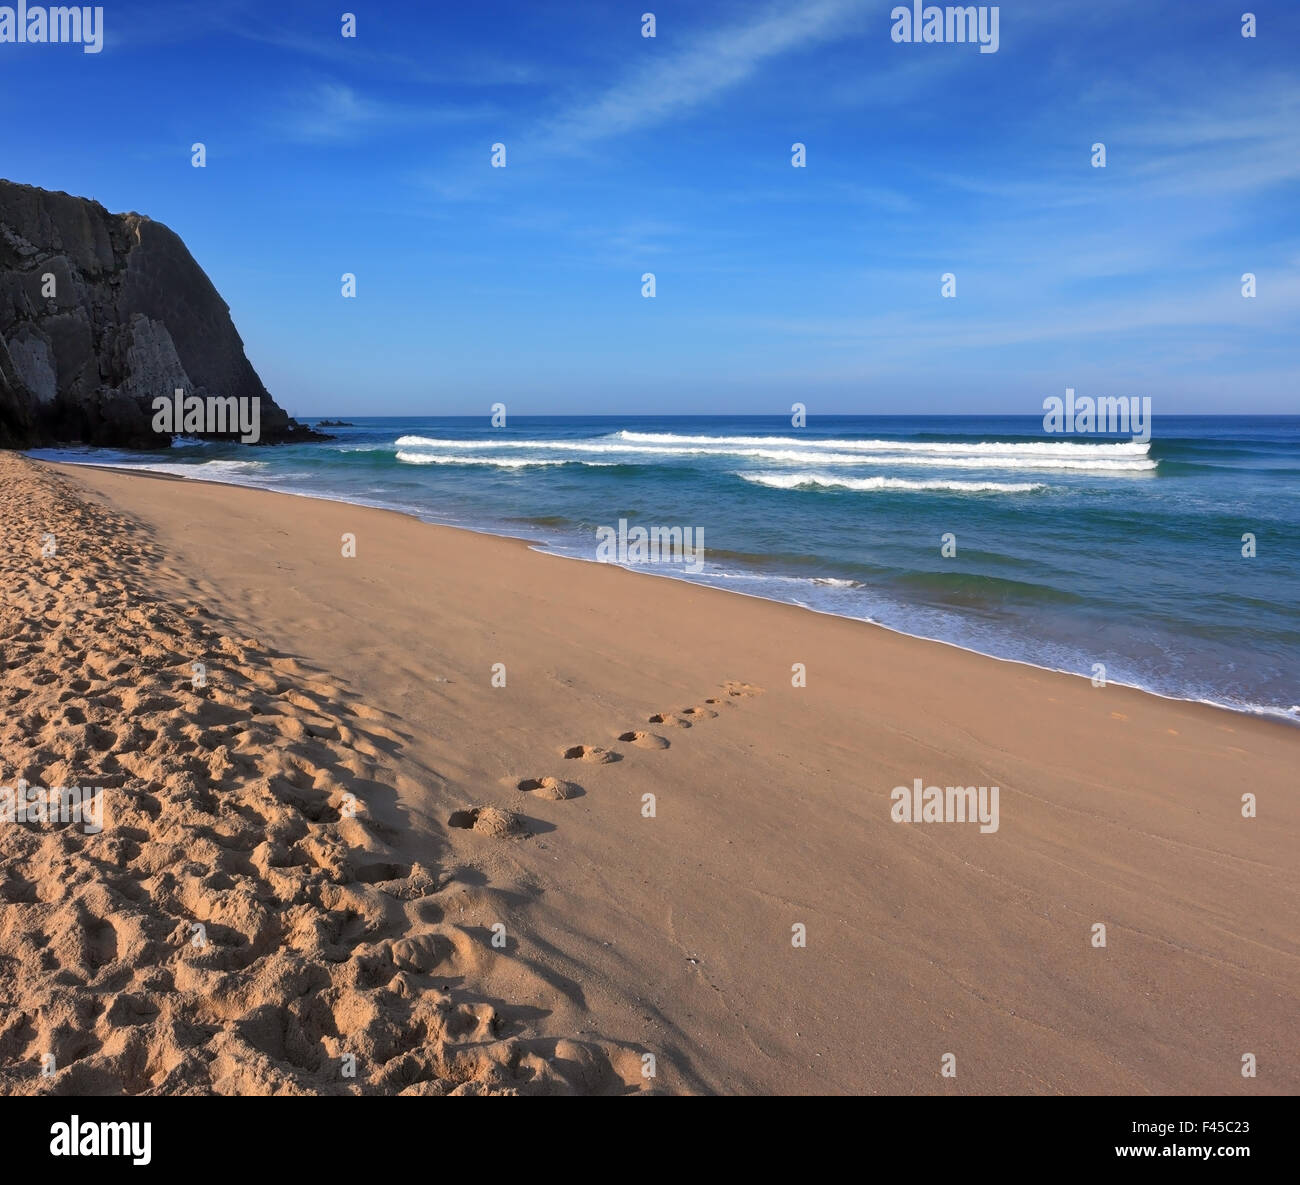 Early sun on the sandy beach Stock Photo